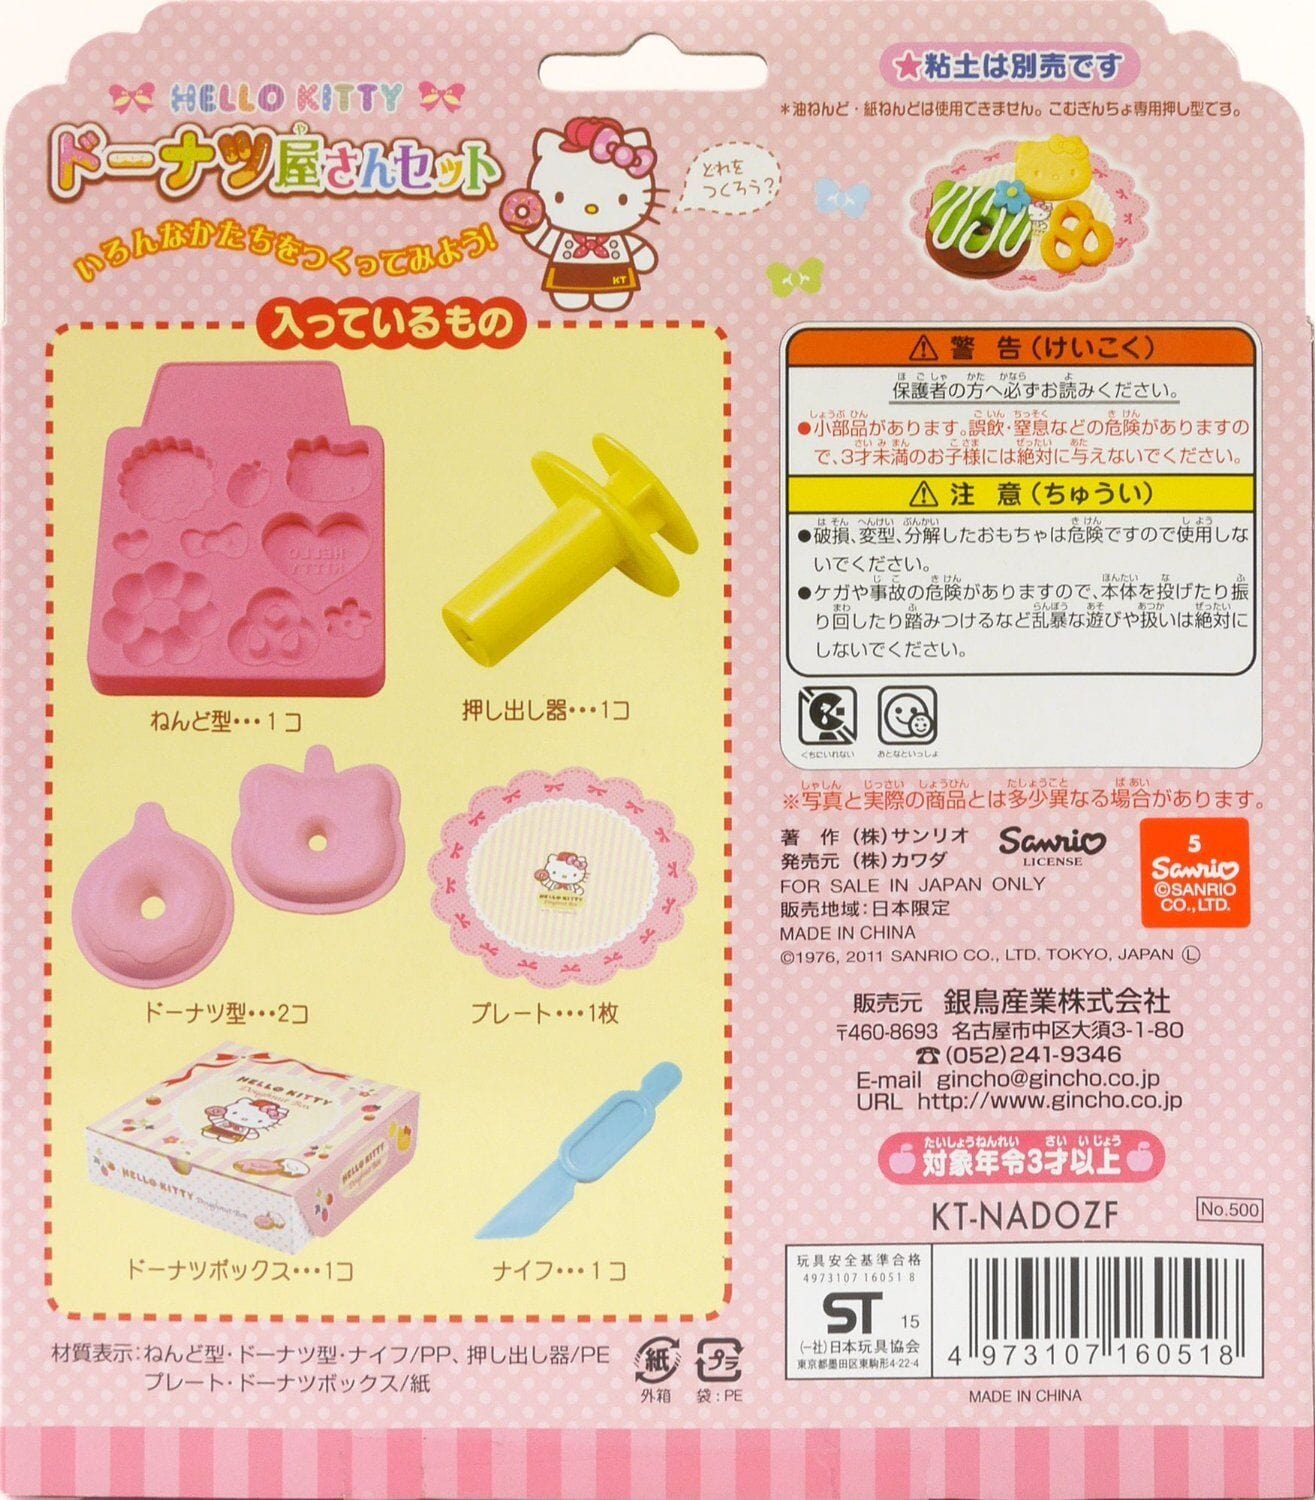 Silver Bird - Kincho Gintori Sangyo Hello Kitty Wheat Clay Mold Set -  Playdoh Mold  Durio.sg